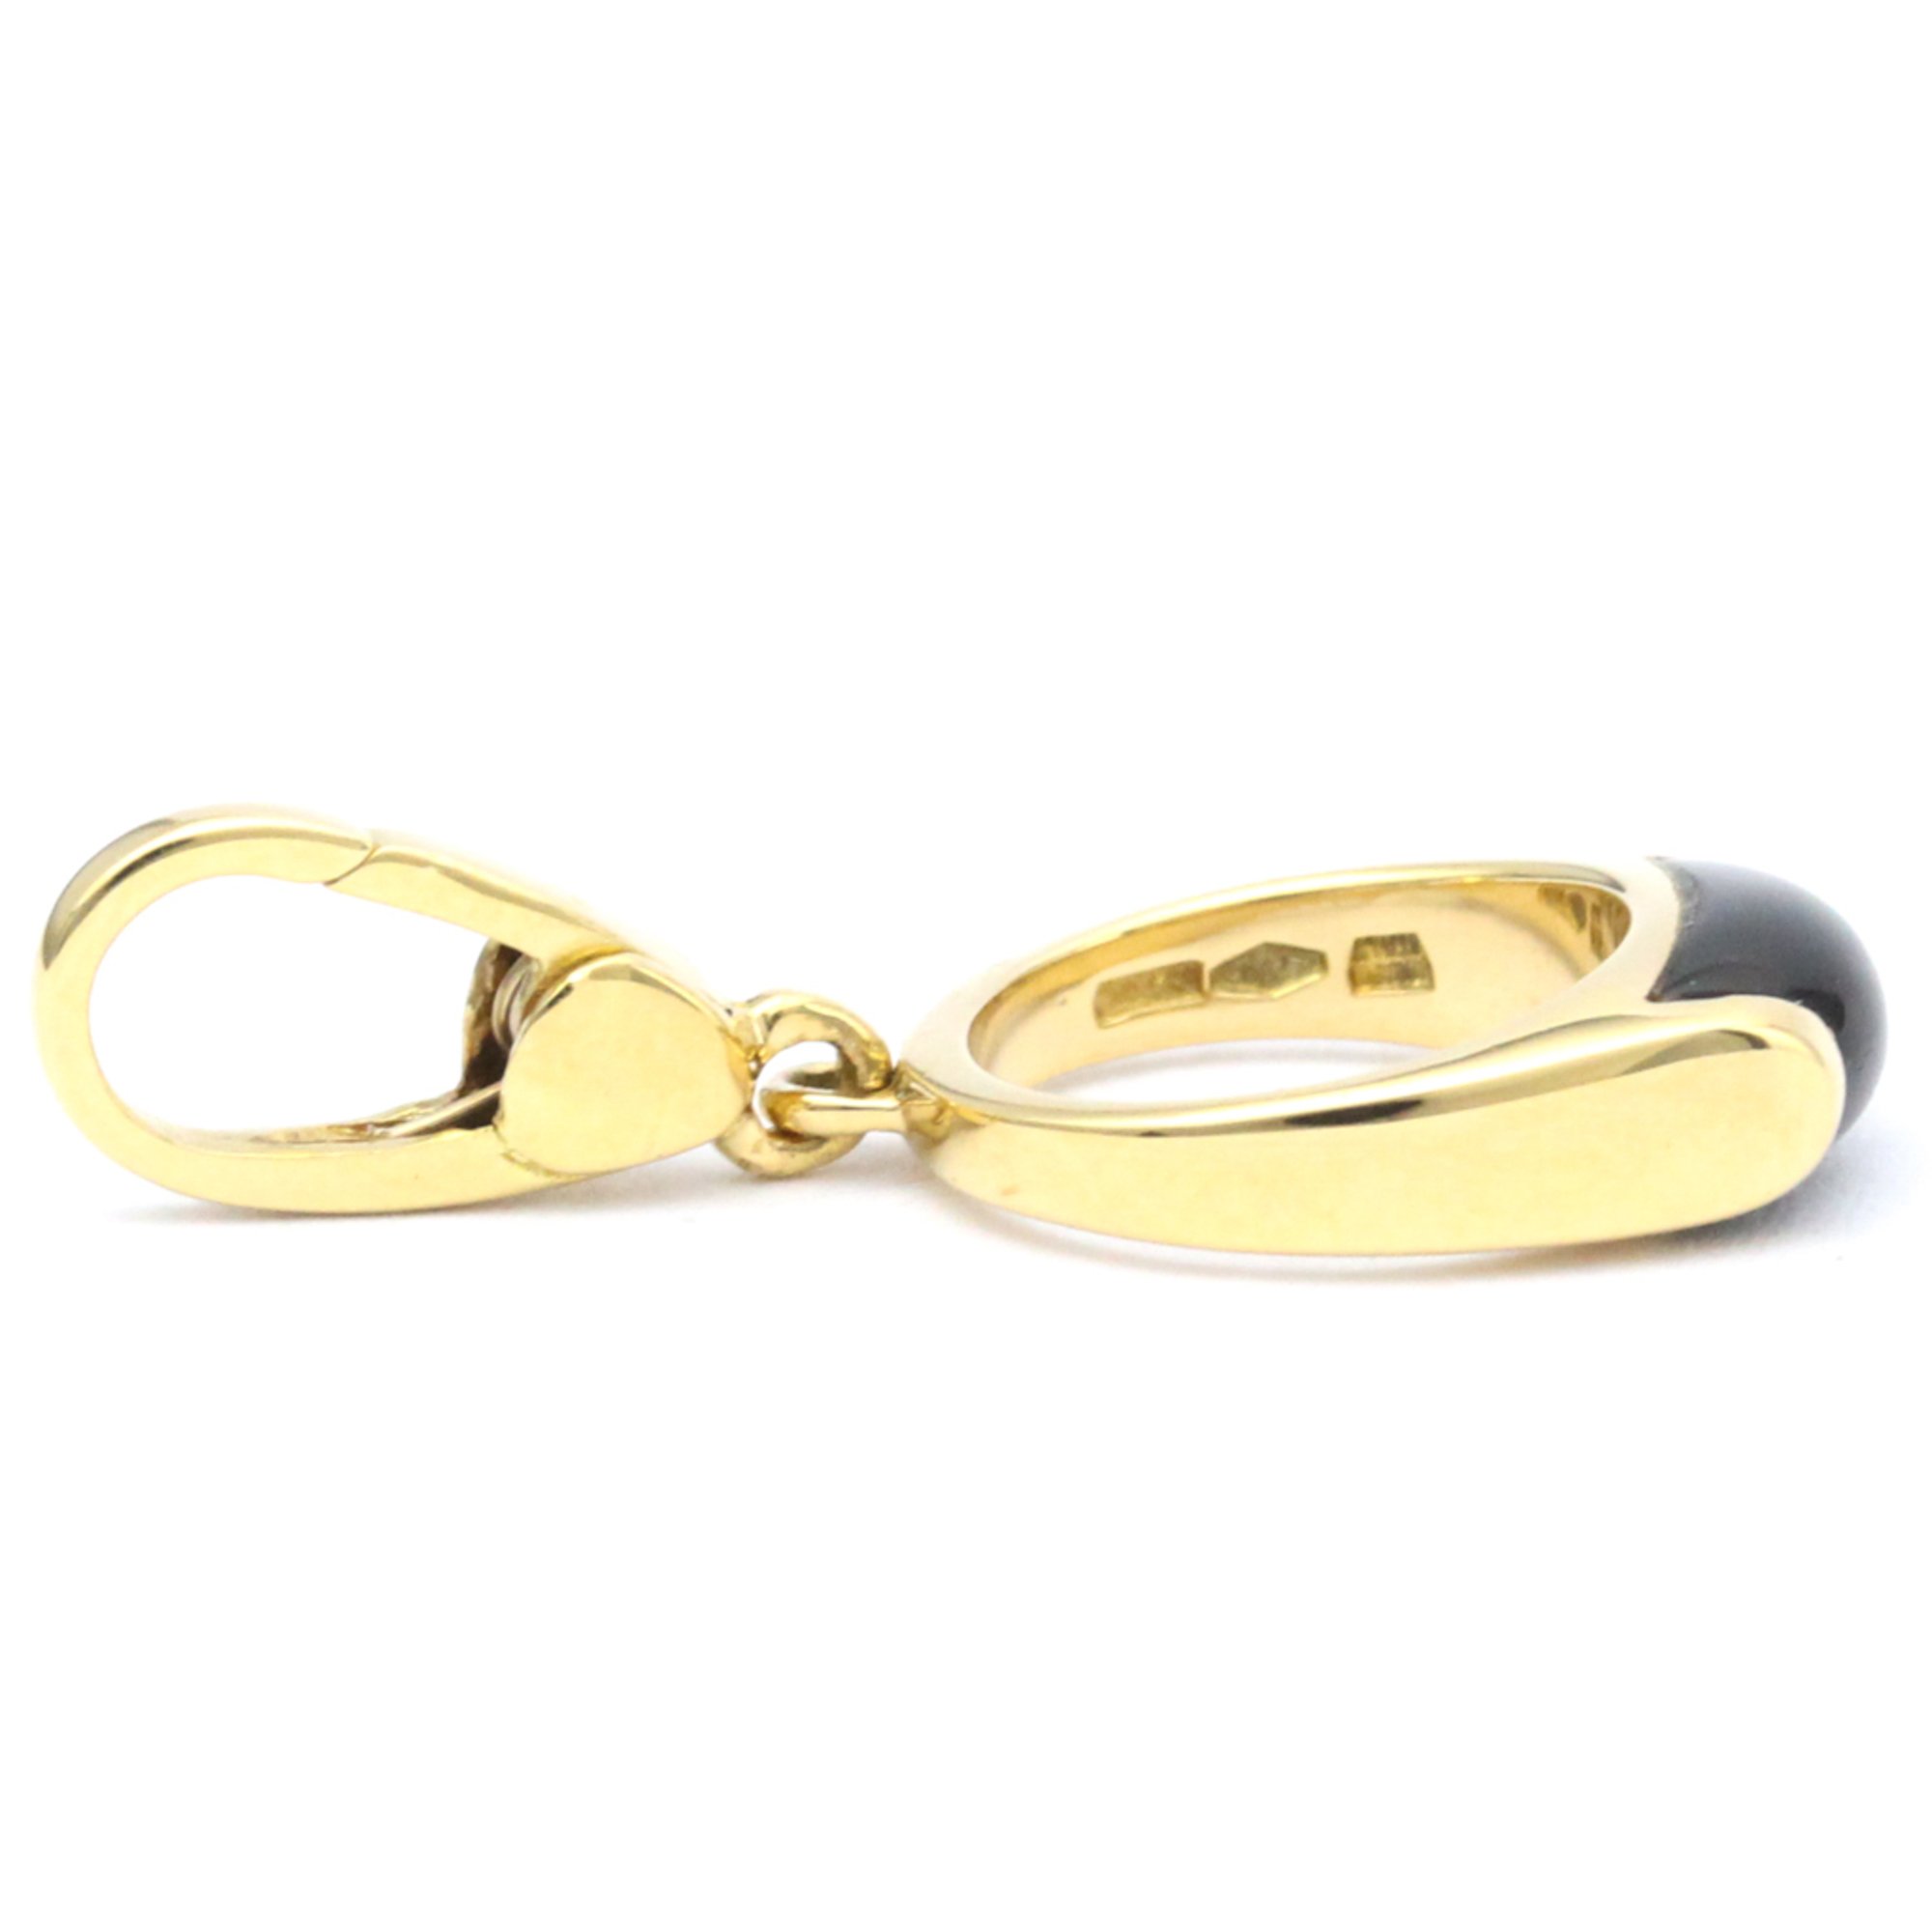 Bvlgari Tronchet Charm Yellow Gold (18K) No Stone Men,Women Fashion Pendant Necklace (Gold)